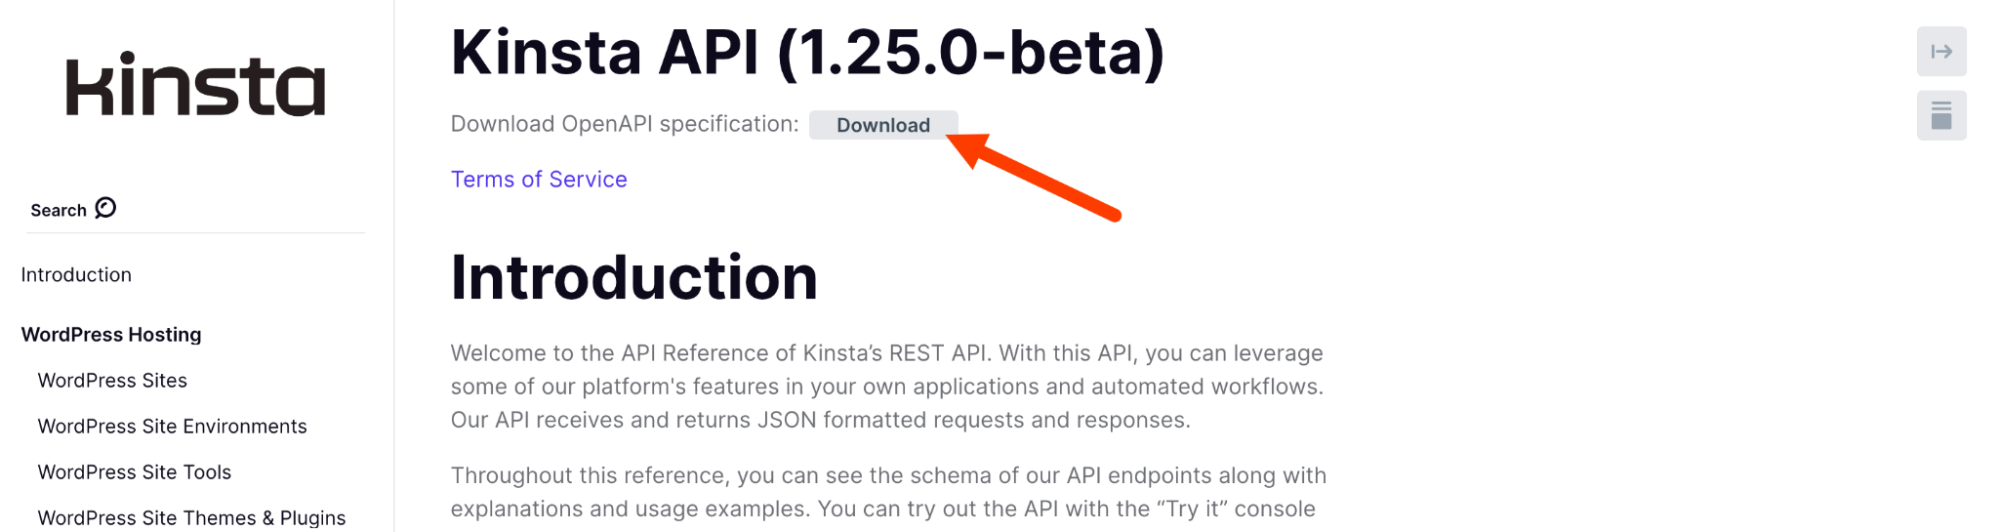 Especificación OpenAPI de la API de Kinsta.